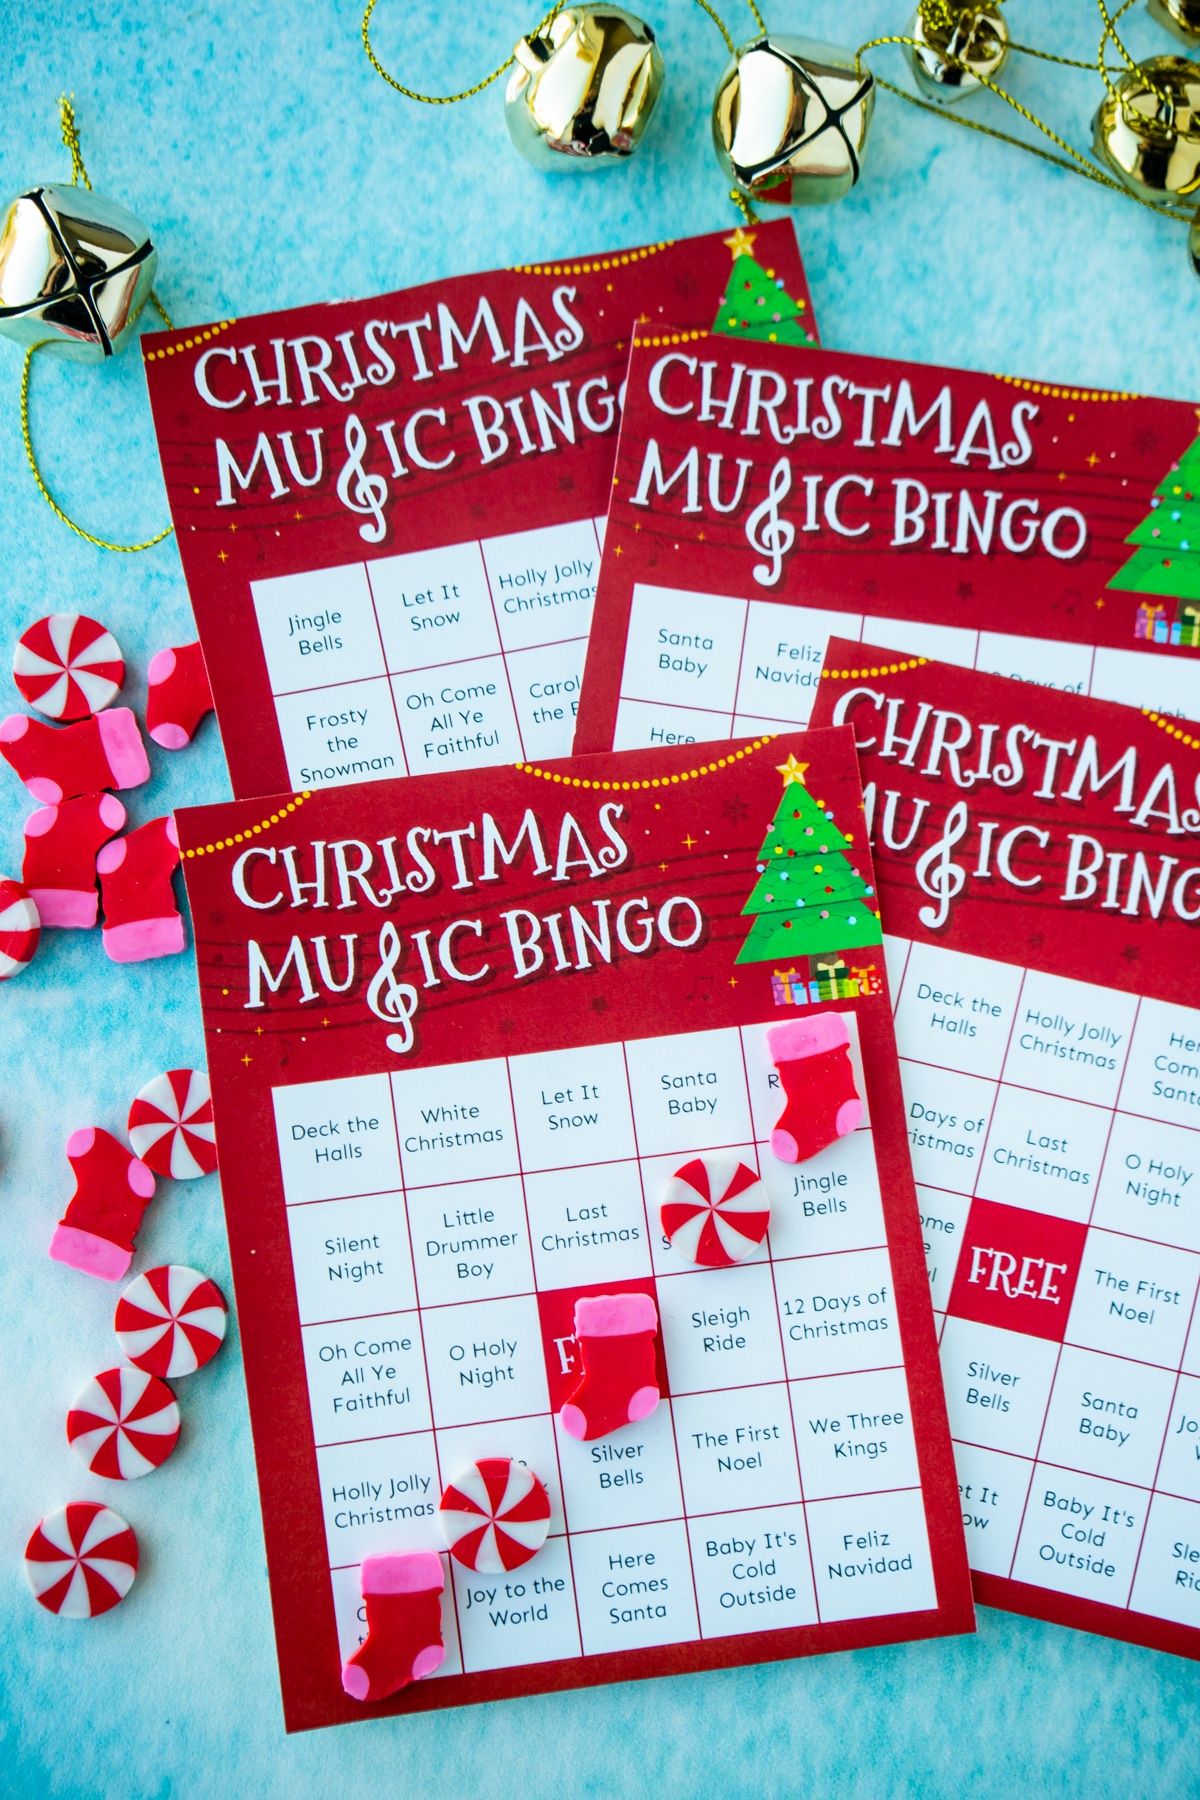 Štyri vianočné hudobné bingo karty na modrom pozadí